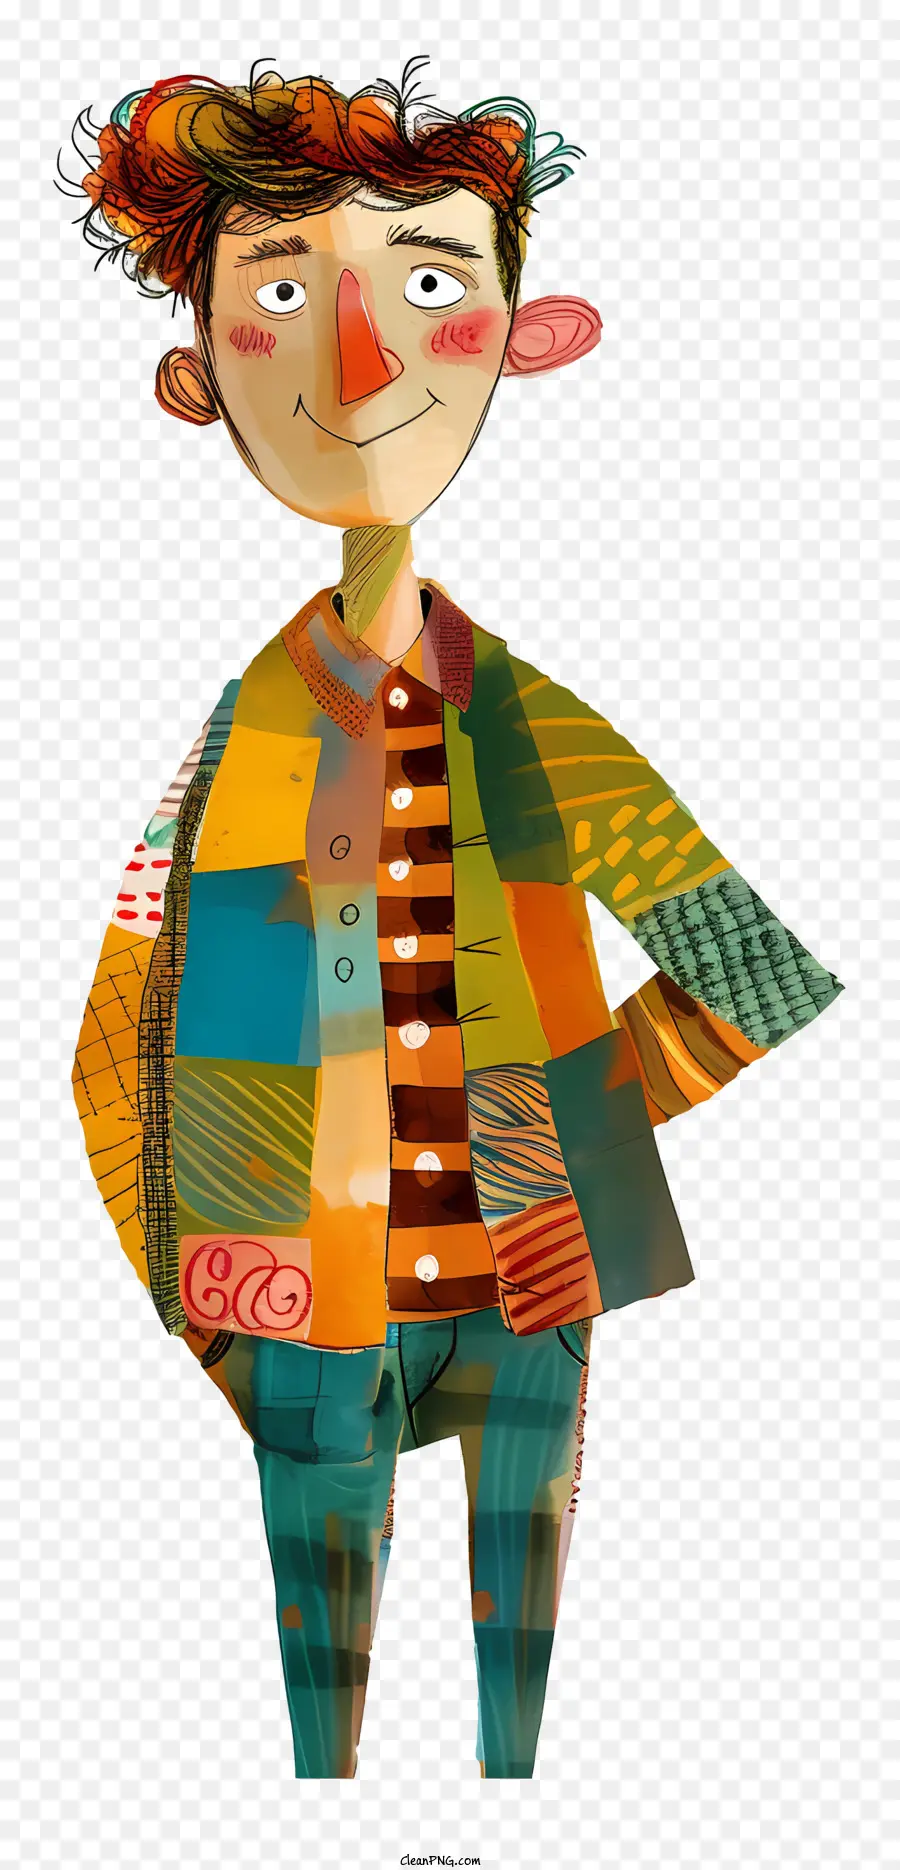 Wurgender Cartoon Mann farbenfrohe Kleidung Dynamisches Design glücklicher Ausdruck Arme verschränkt - Glücklicher Mann in farbenfrohen, dynamischen Kleiderposen zuversichtlich